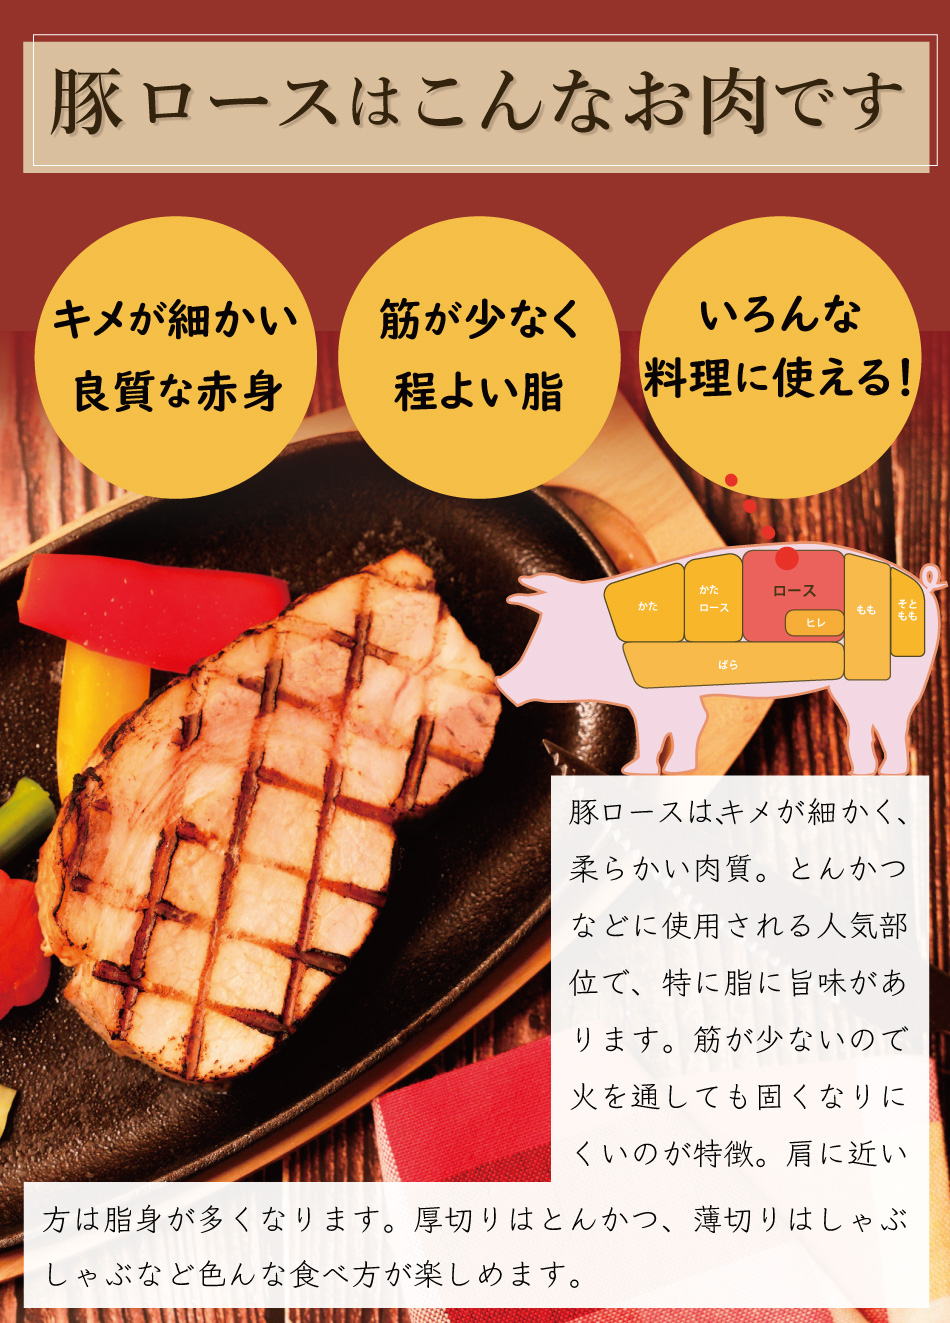 JAPAN X,ジャパンエックス,ロースブロック肉,ロース,豚ロース,塊肉,ロース塊肉,1kg,キメが細かく柔らかい,脂に旨味があります,筋が少なく火を通しても固くなりにくいのが特徴,いろんな食べ方が楽しめます,